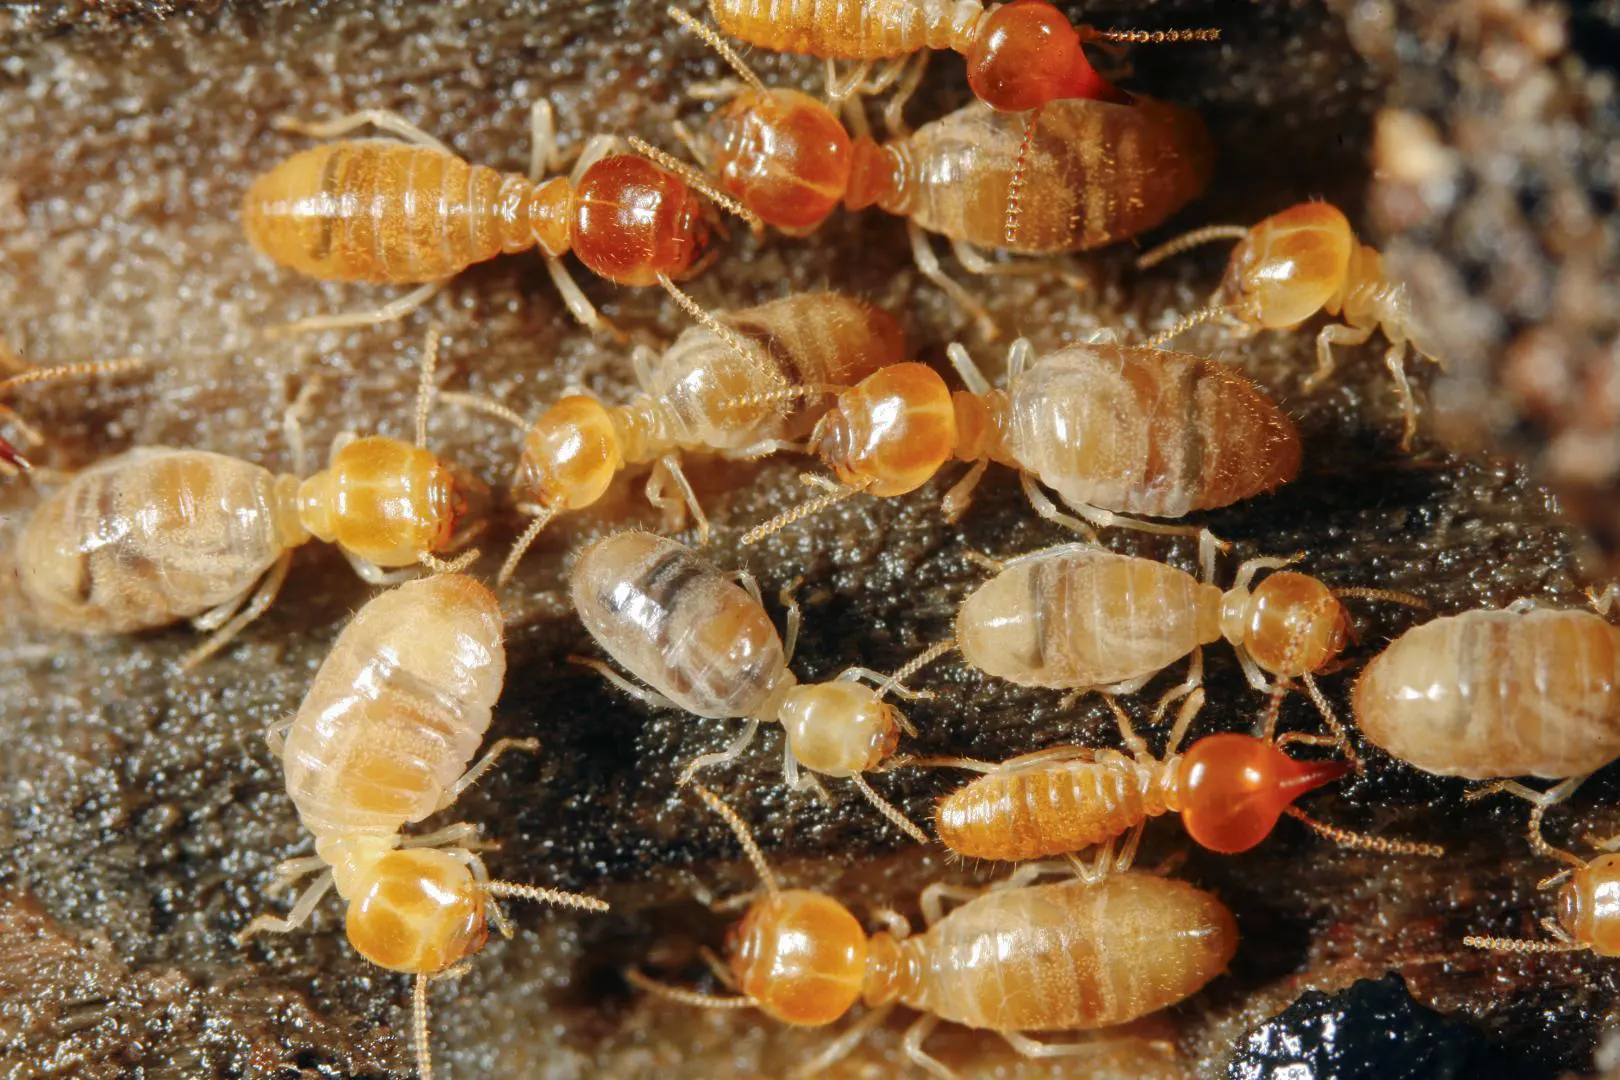 Les termites sont des insectes xylophages nuisibles du bois creusant des galeries, le traitement préventif et curatif permet une éradication complète